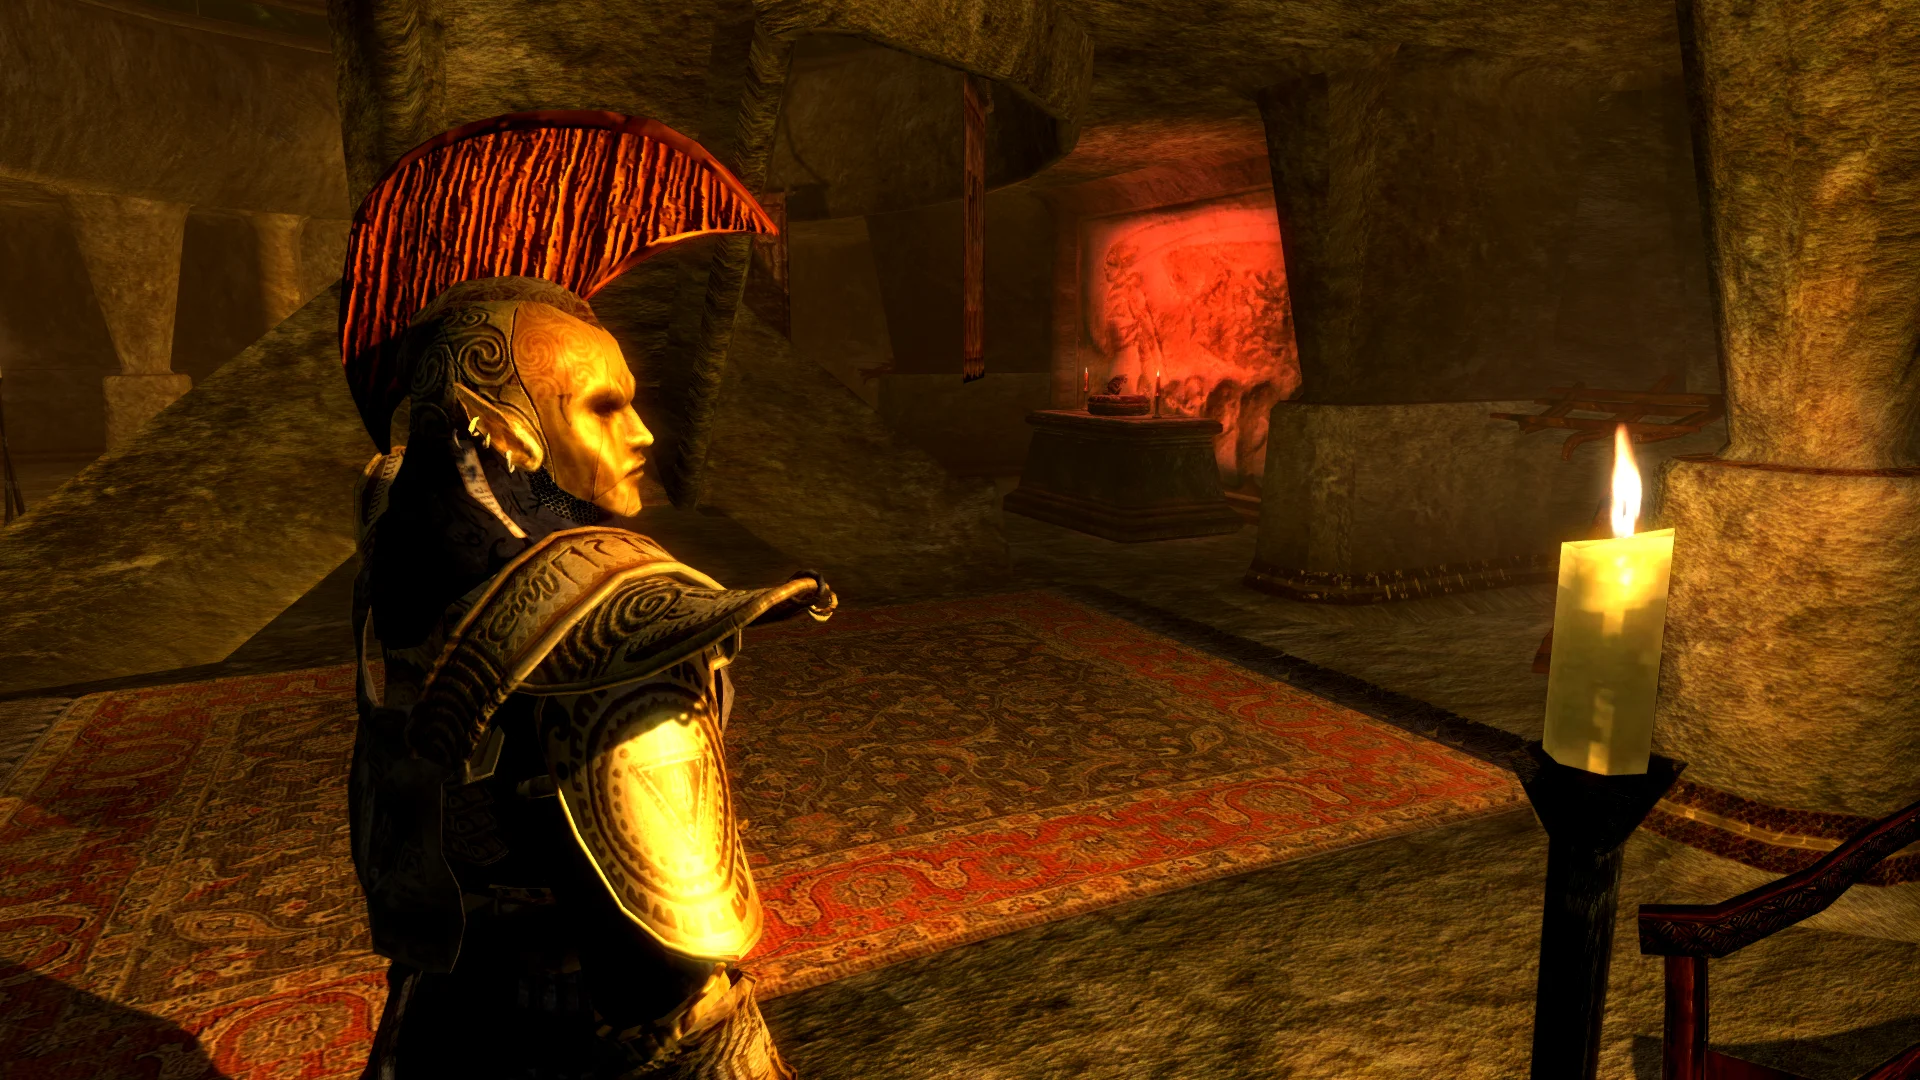 25 марта 2019 года The Elder Scrolls исполнилось 25 лет. Чтобы отпраздновать это событие мы, как поклонники вселенной «Древних свитков», подготовили серию ностальгических материалов. В этом — 15 интерактивных слайдеров для сравнения «Морровинда» с модификацией Skywind, переносящей третью часть на ресурсы The Elder Scrolls V: Skyrim. 